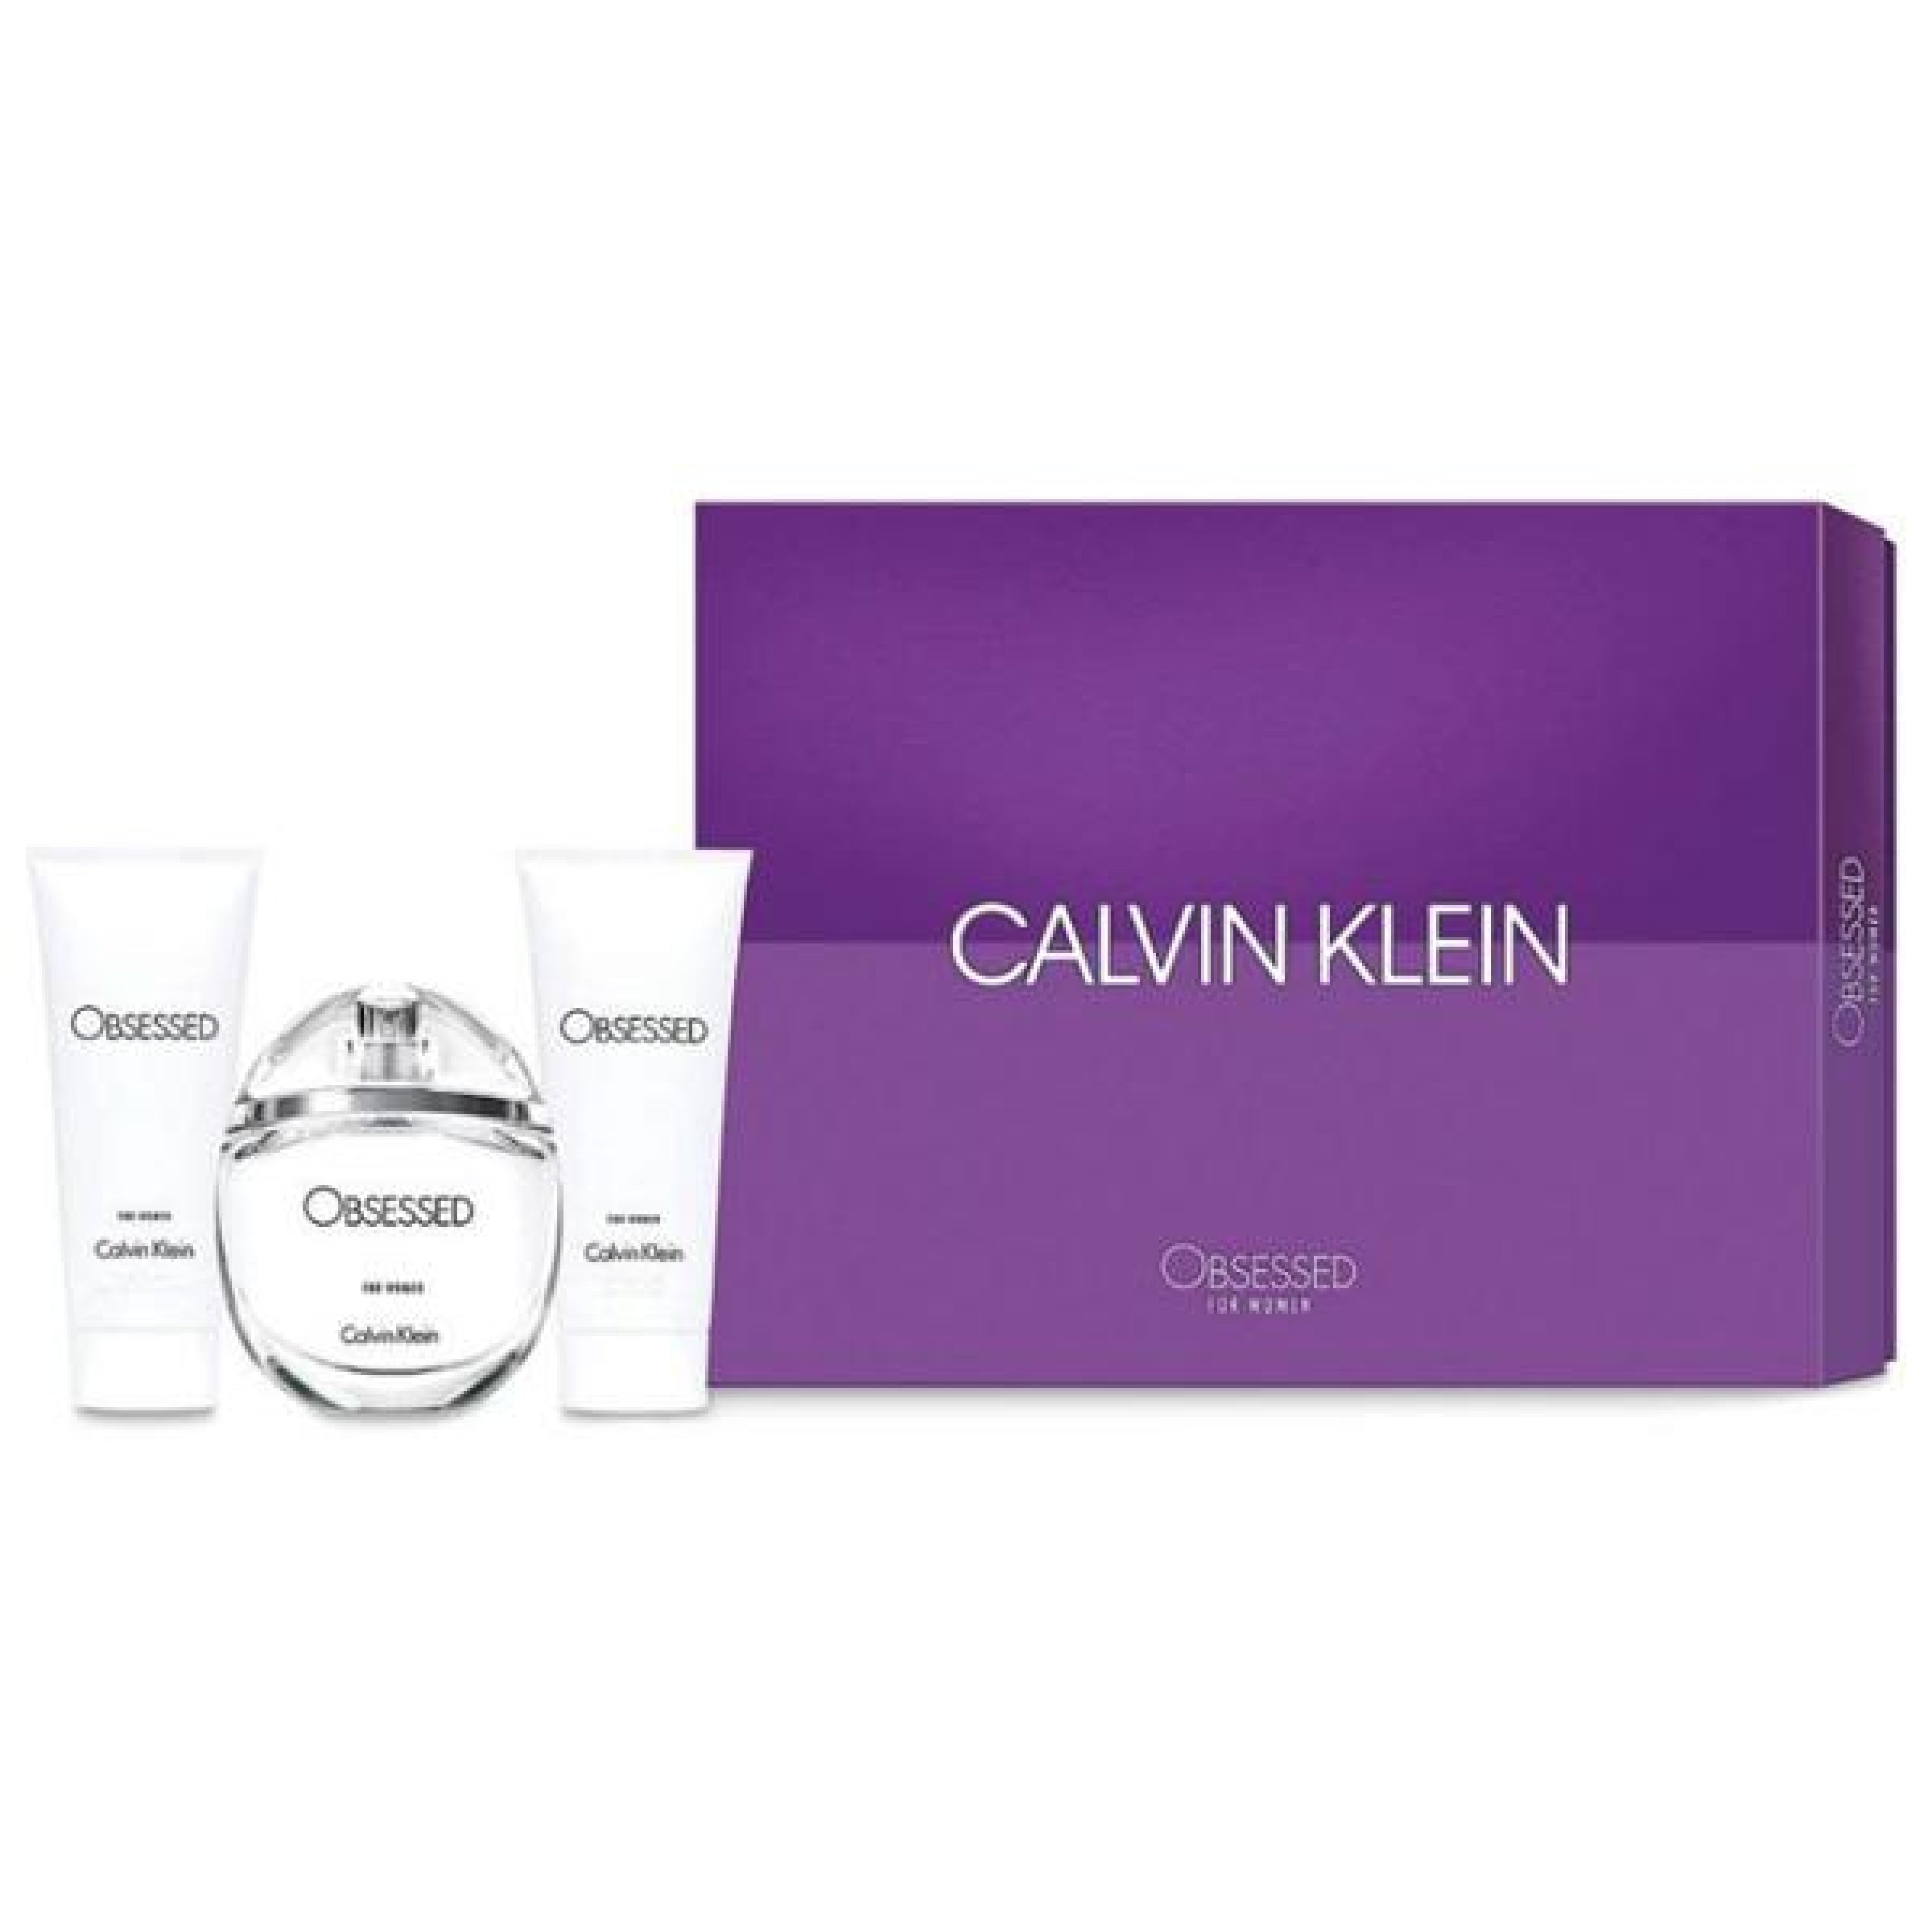 calvin klein ck obsessed 3pcs gift set - 100ml edp spray + 100ml body lotion + 100ml shower gel (women)